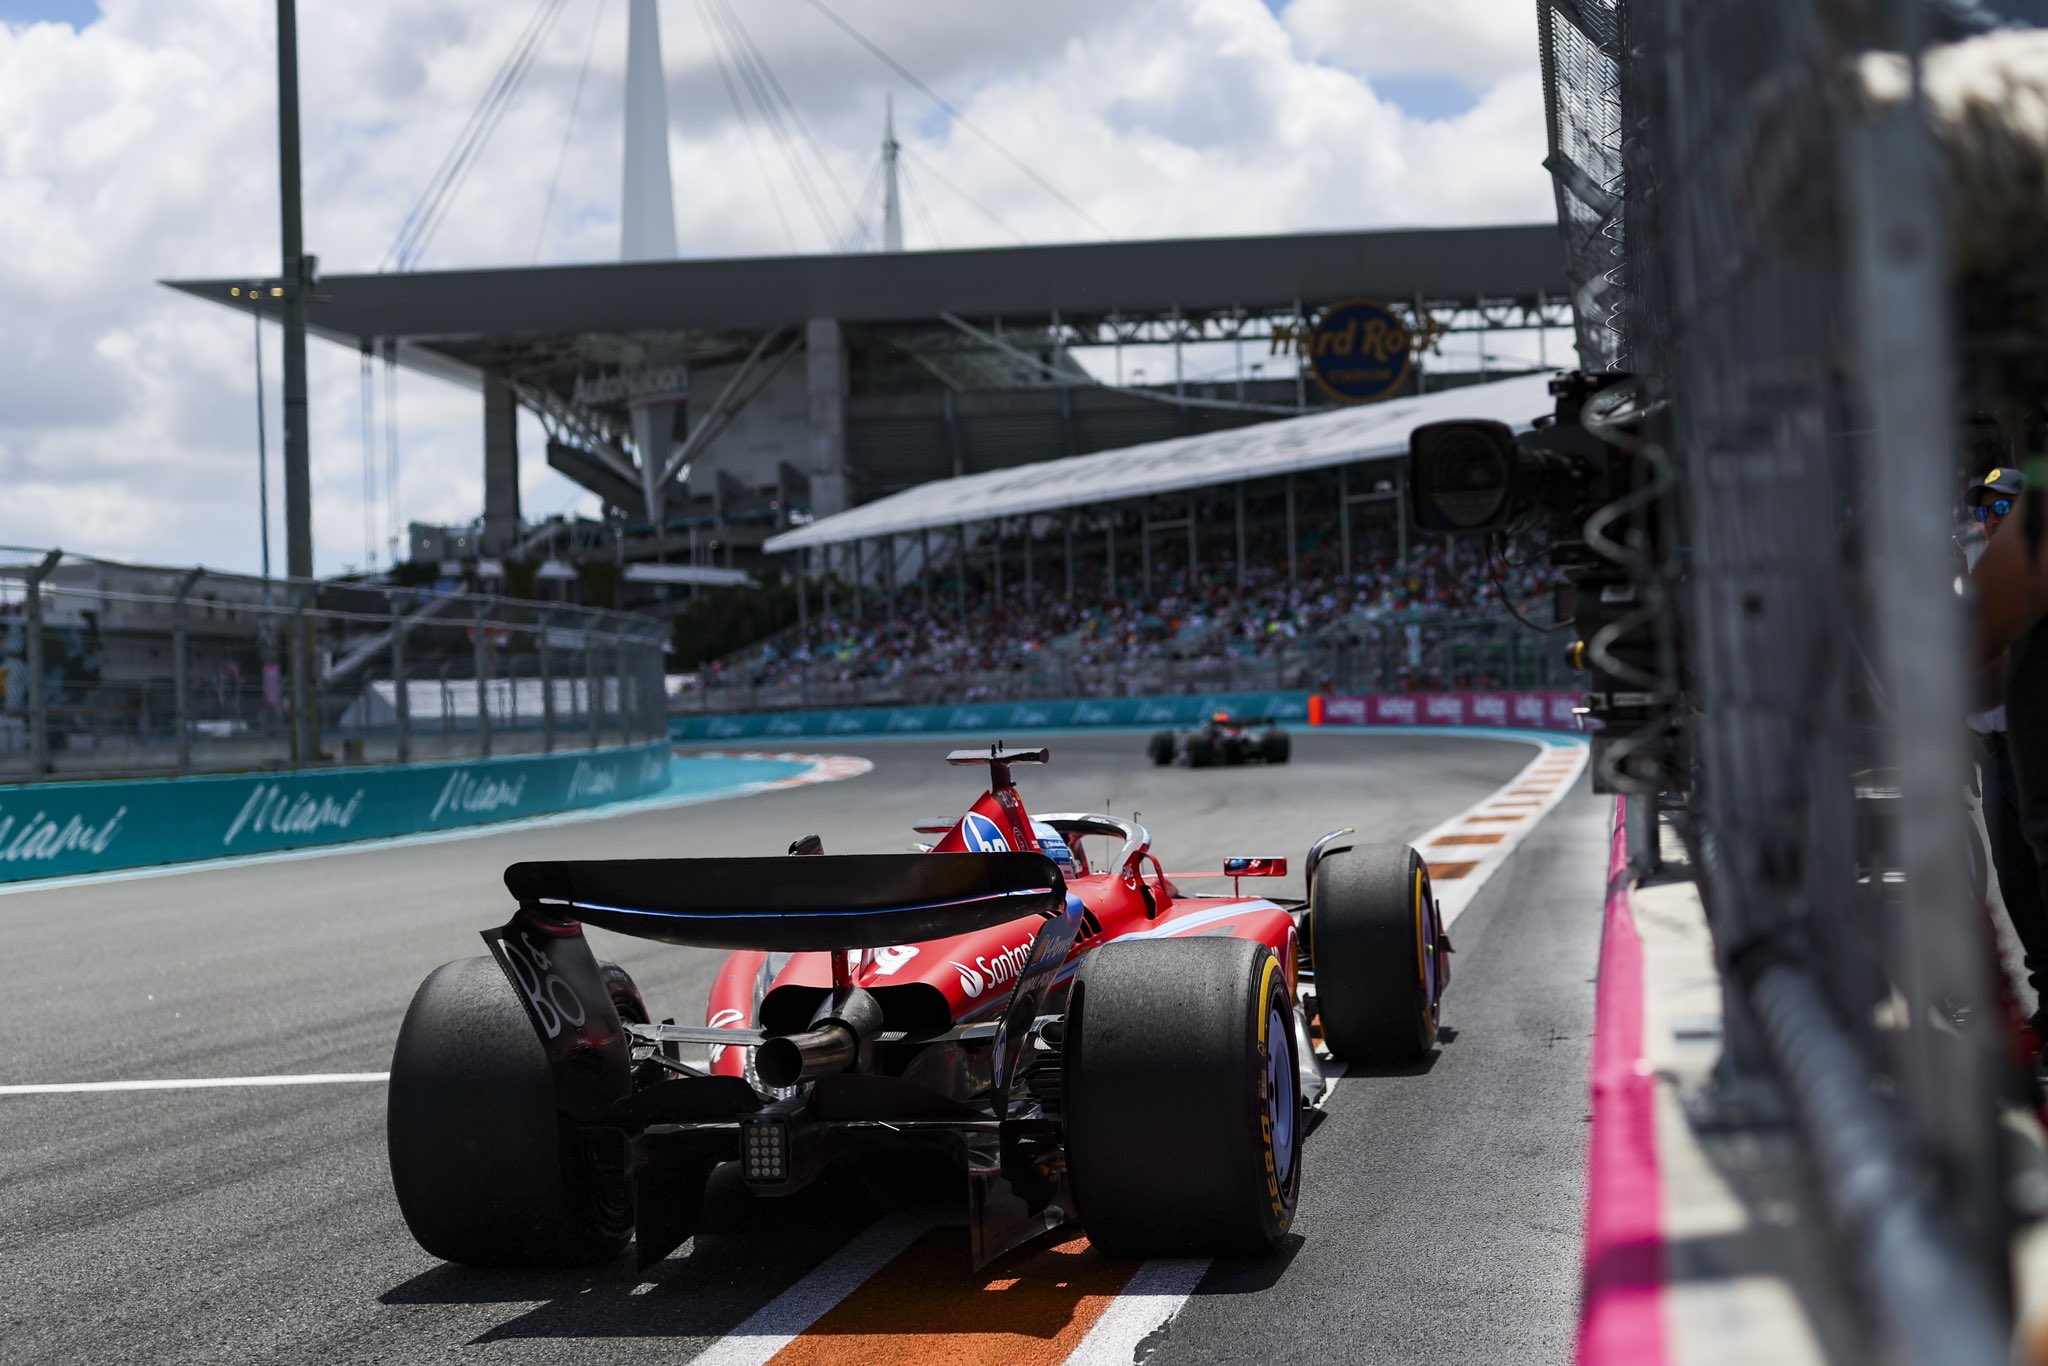 Gp Miami: Analisi qualifiche e Sprint: Verstappen è il solito cannibale ma la Ferrari crede all’impresa